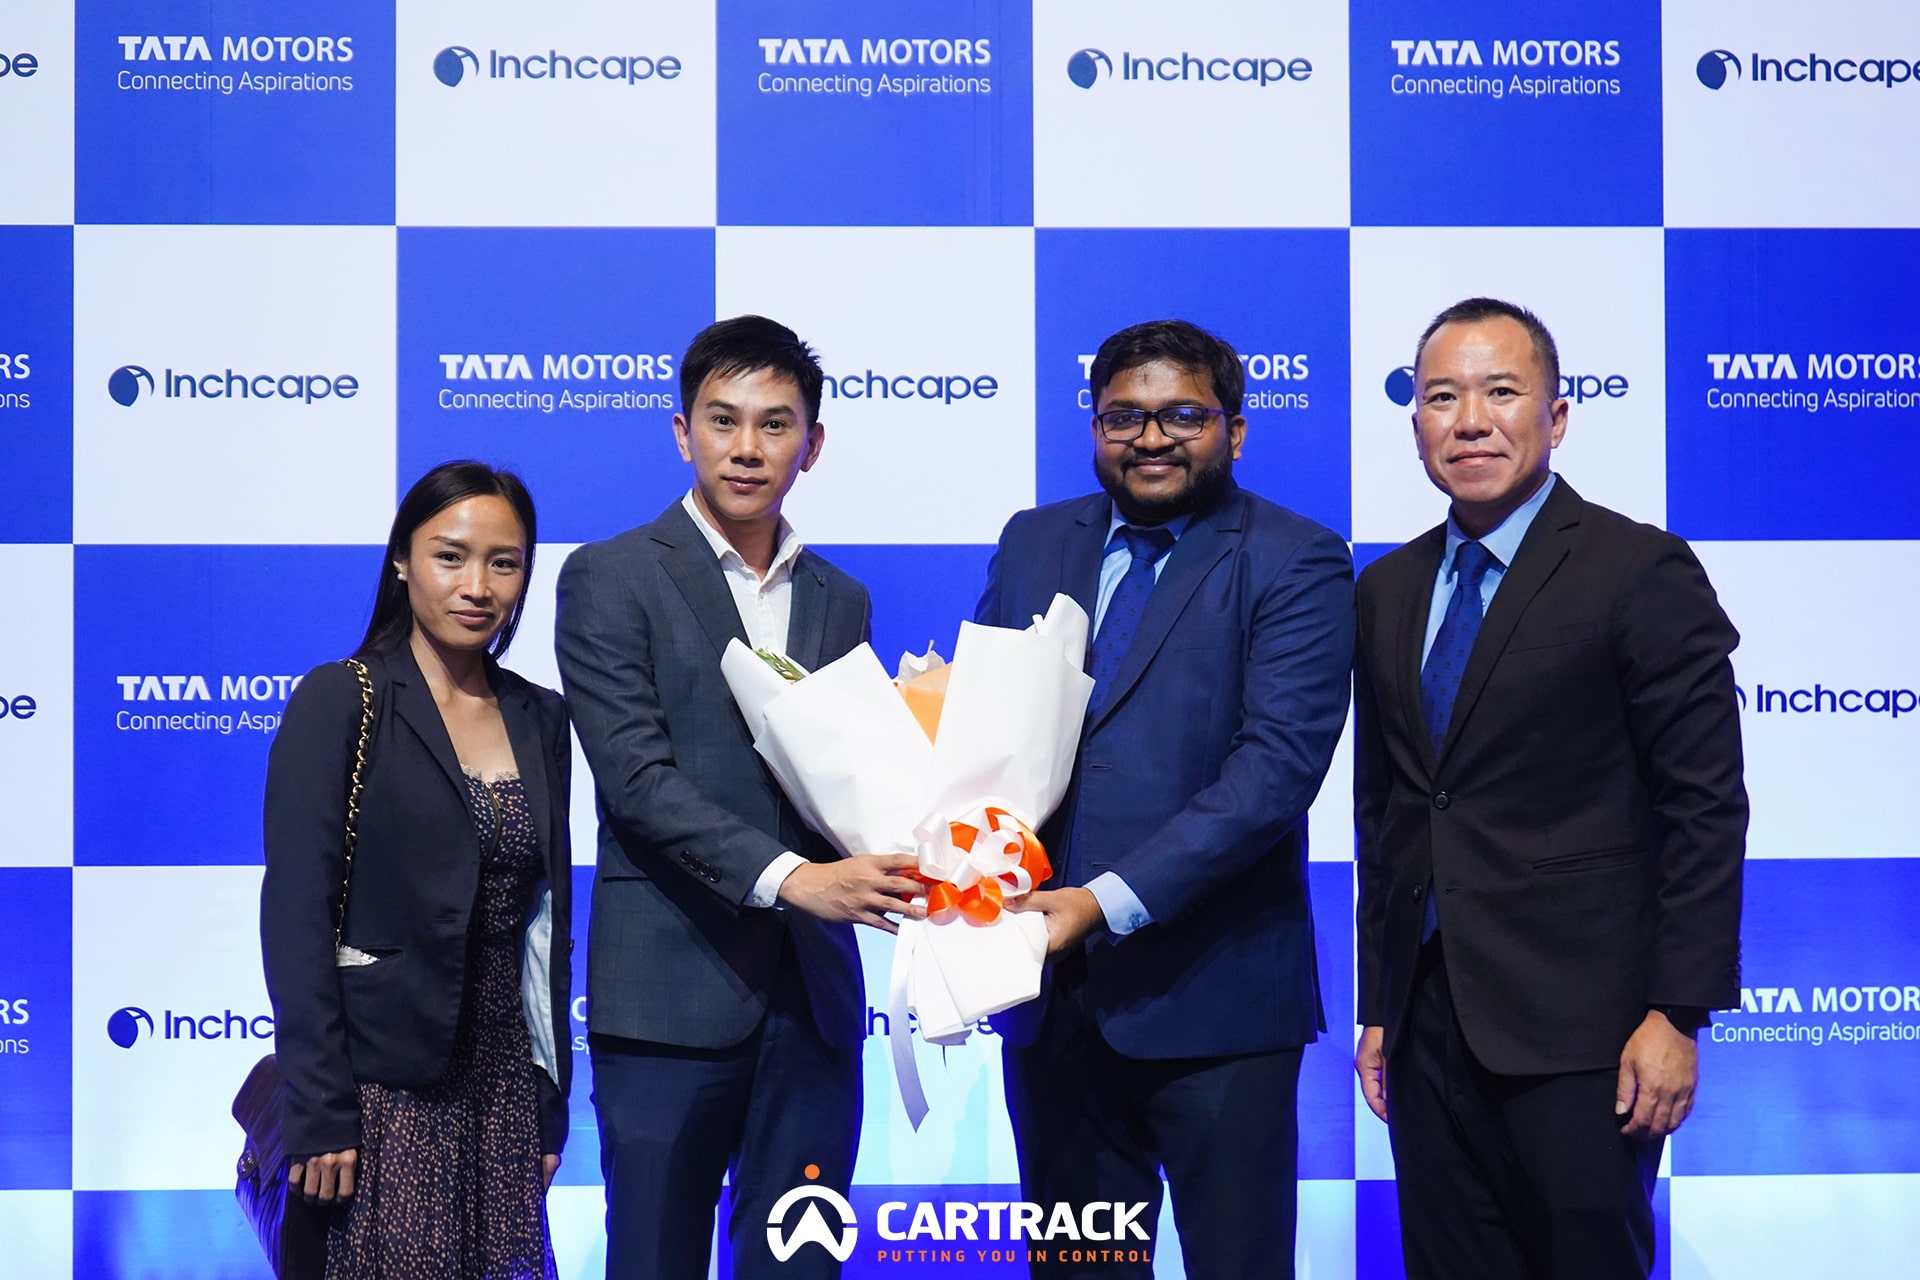 ข่าวยานยนต์ - Cartrack จับมือ TATA Motors เปิดตัวระบบ Telematics กับรถใช้งานรุ่นใหม่ส่งท้ายปี